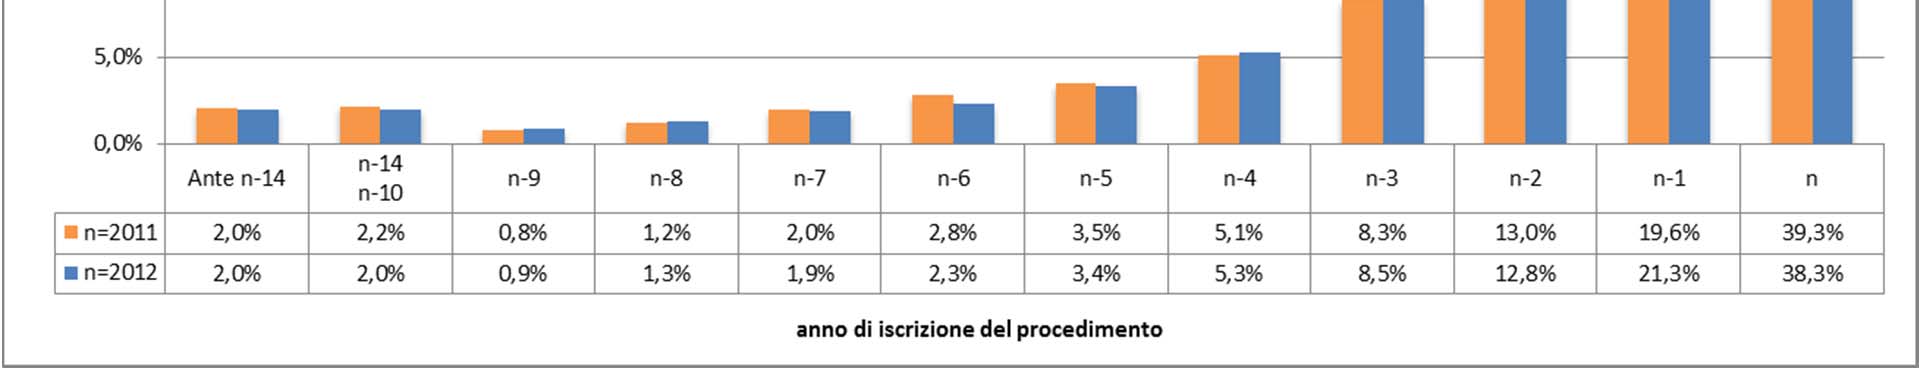 12 Tribunali ordinari Anno 2012 vs